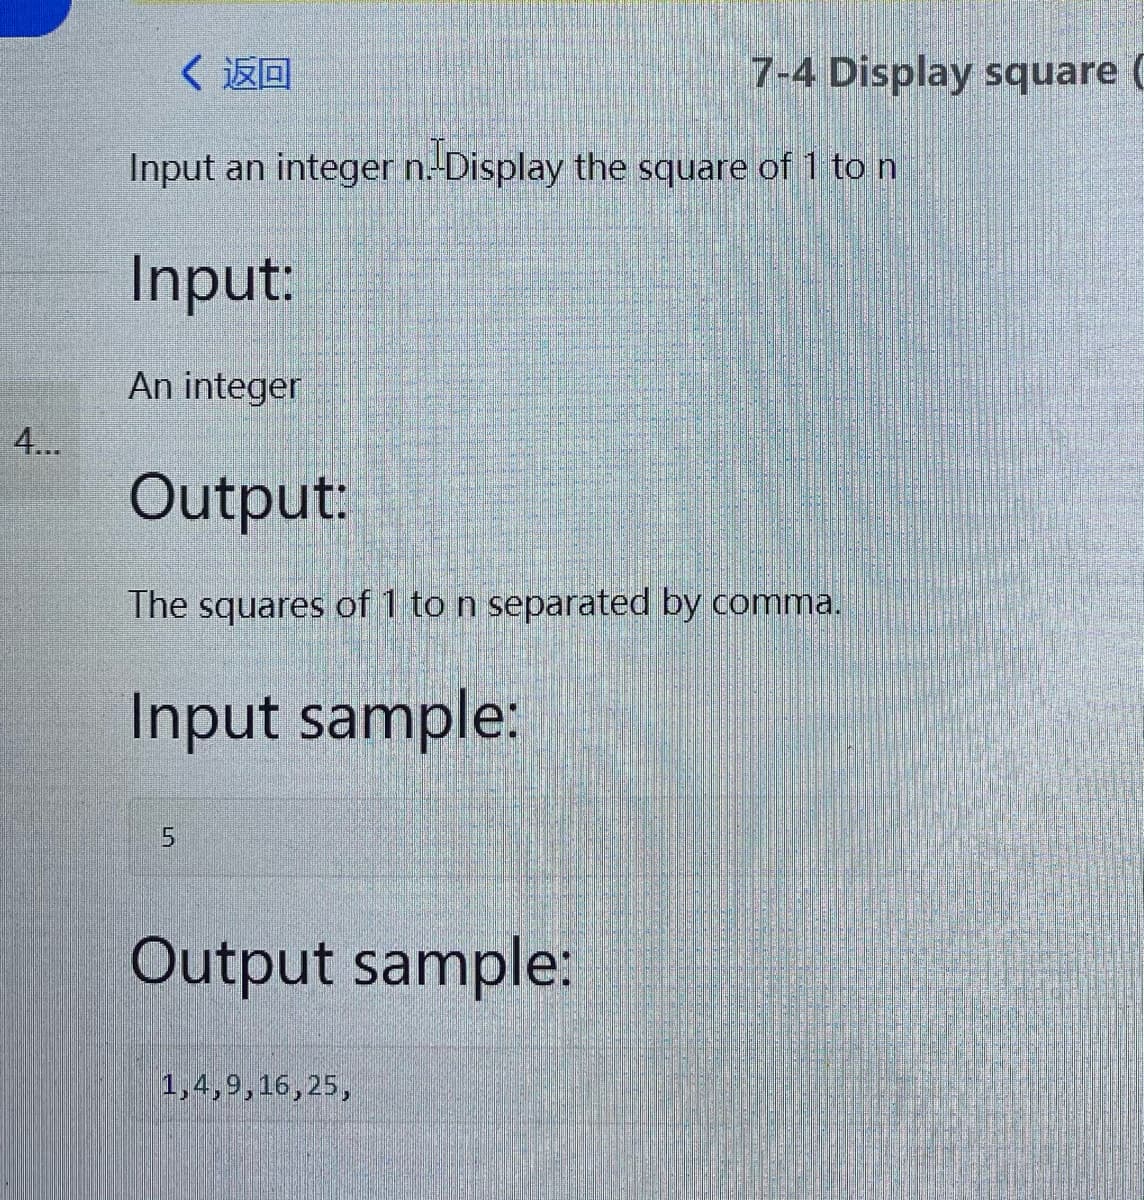 〈返回
7-4 Display square (
Input an integer n.-Display the square of 1 to n
Input:
An integer
4..
Output:
The squares of 1 to n separated by comma.
Input sample:
Output sample:
1,4,9,16,25,
